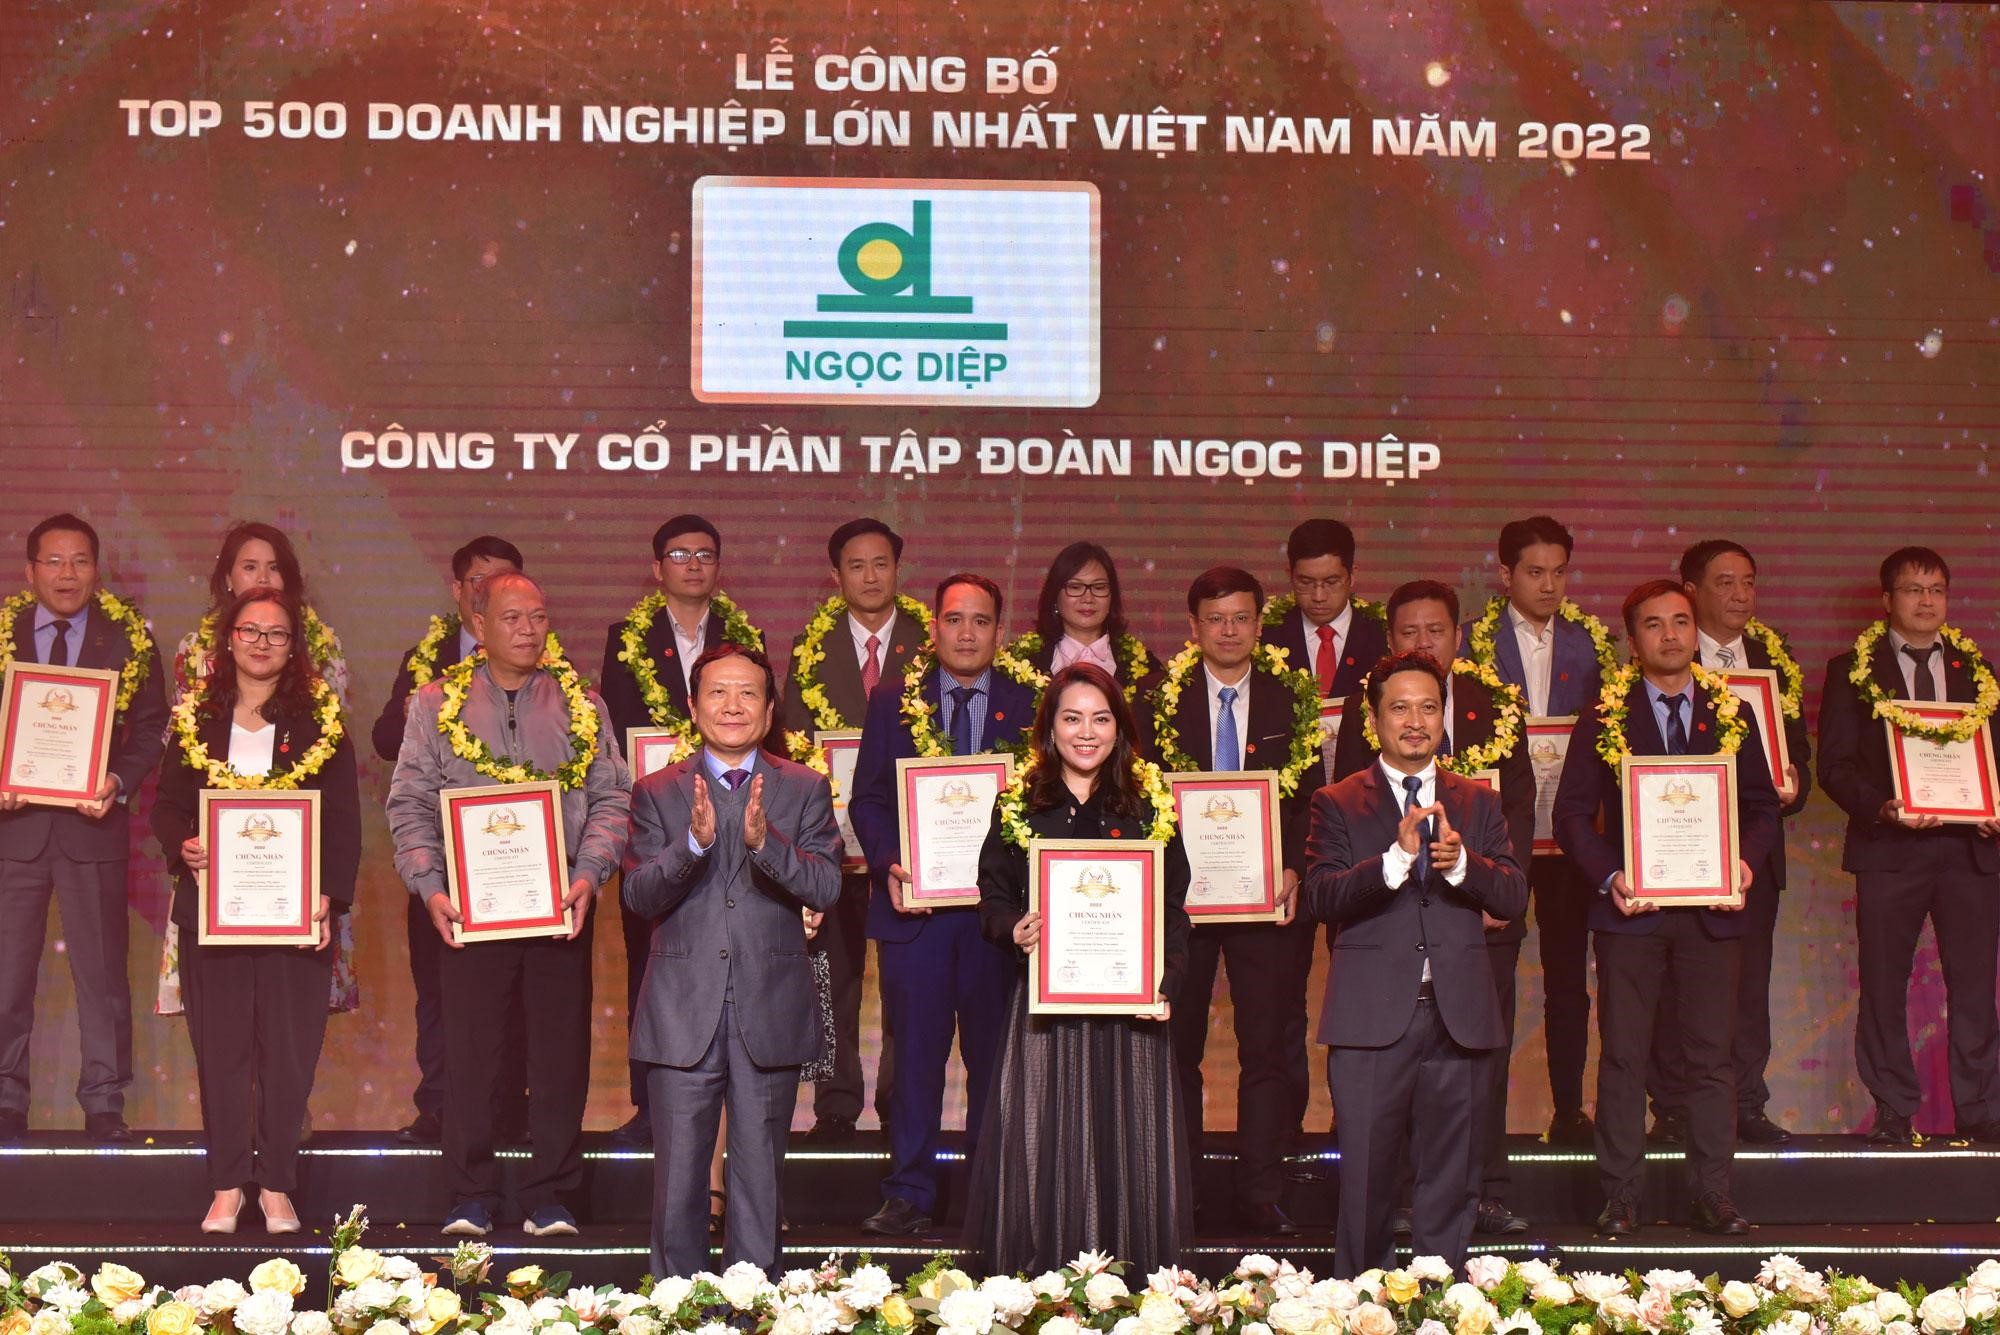 Tập đoàn Ngọc Diệp và Công ty CP Nhôm Ngọc Diệp tiếp tục góp mặt trong Top 500 Doanh nghiệp lớn nhất Việt Nam